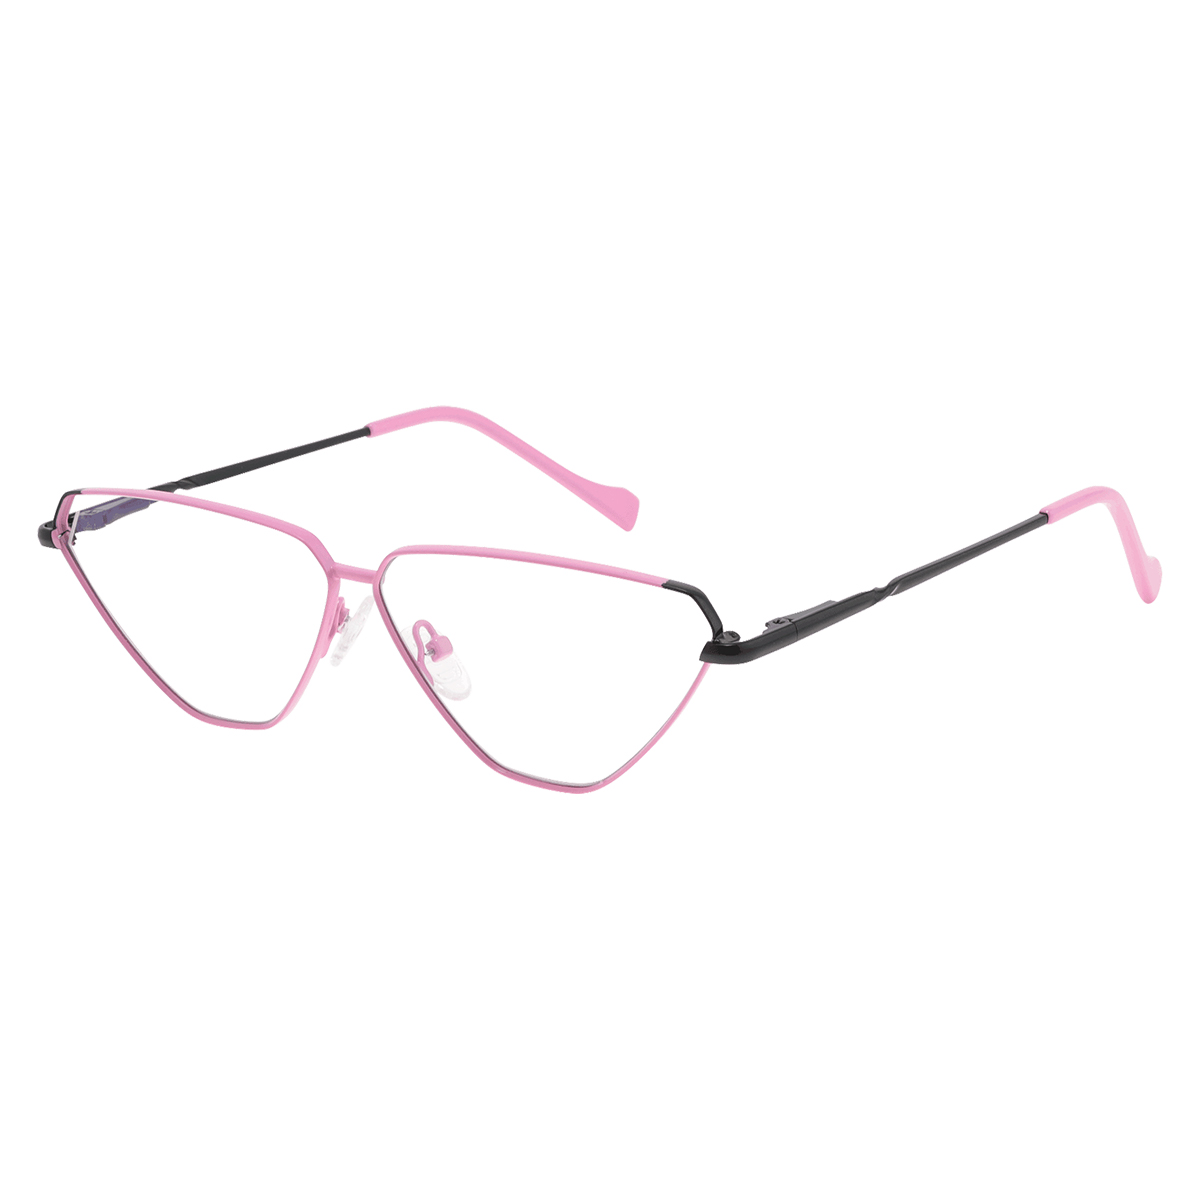 Hebe - Cat-eye Pink-Black Reading Glasses for Women